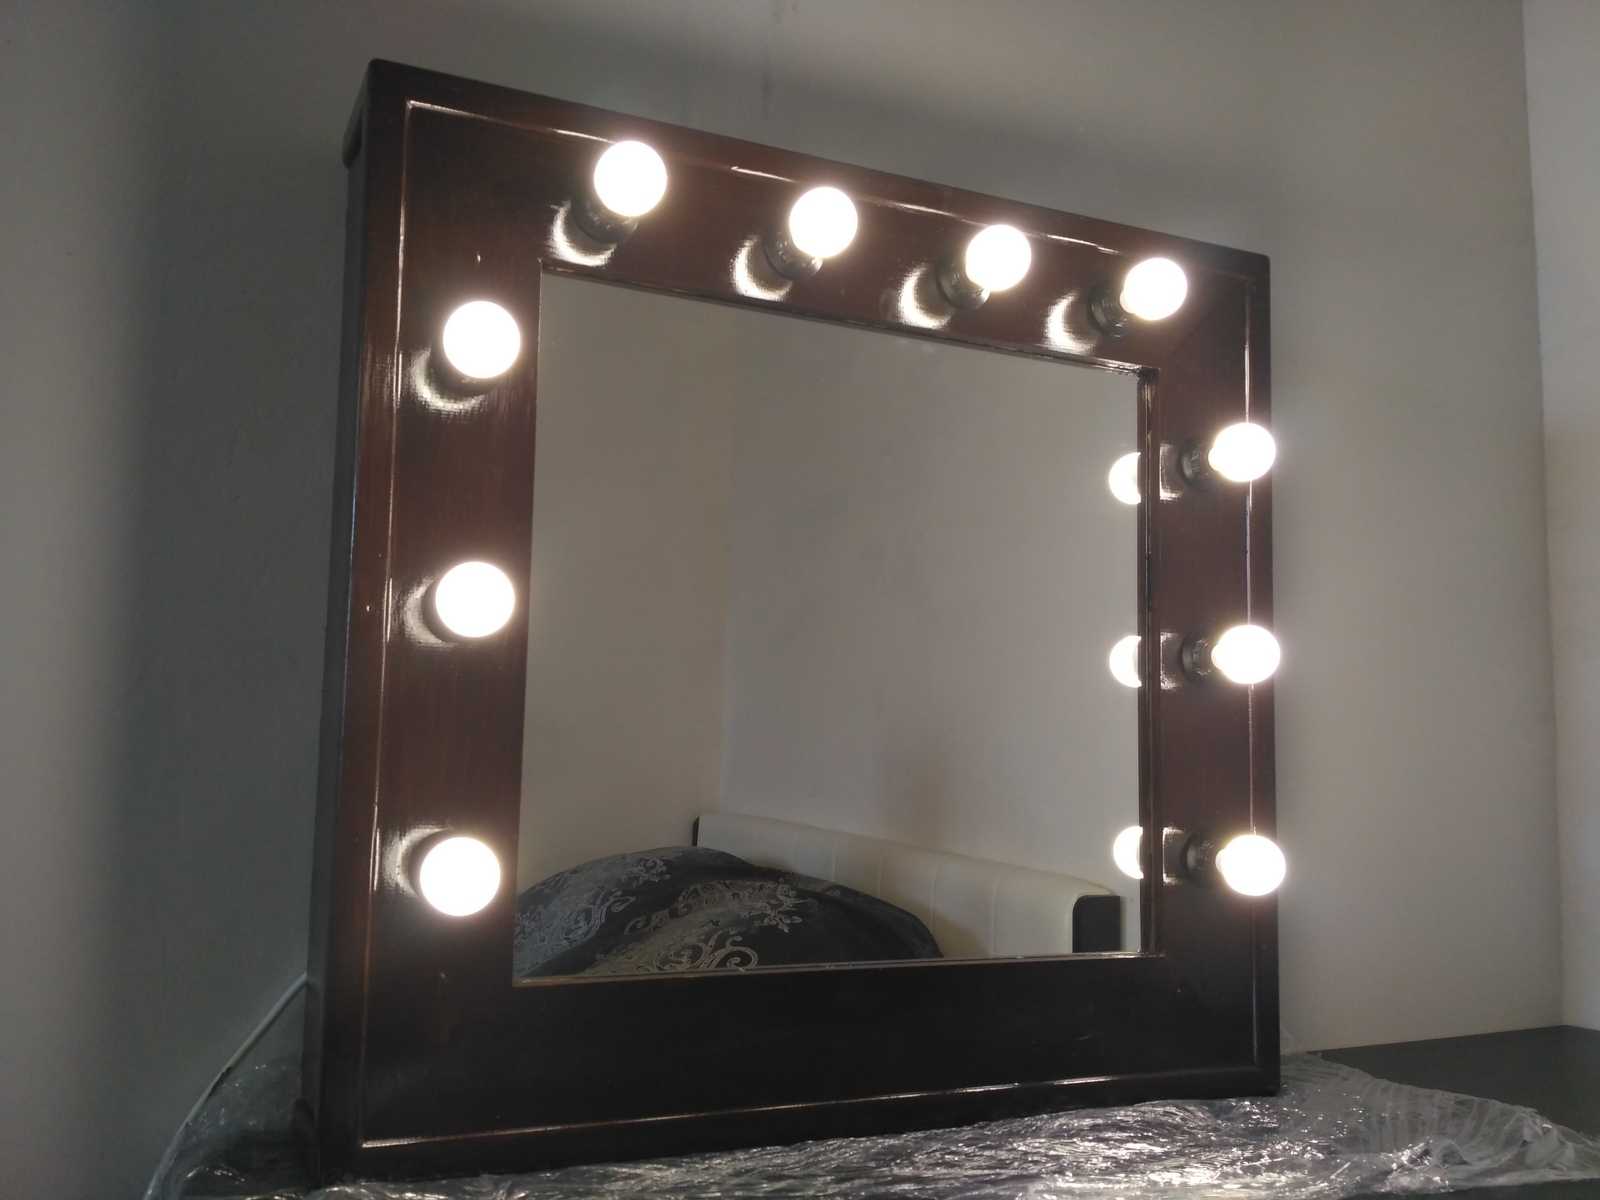 Разновидности зеркал с лампочками, причины популярности у женщин 67 - ДиванеТТо